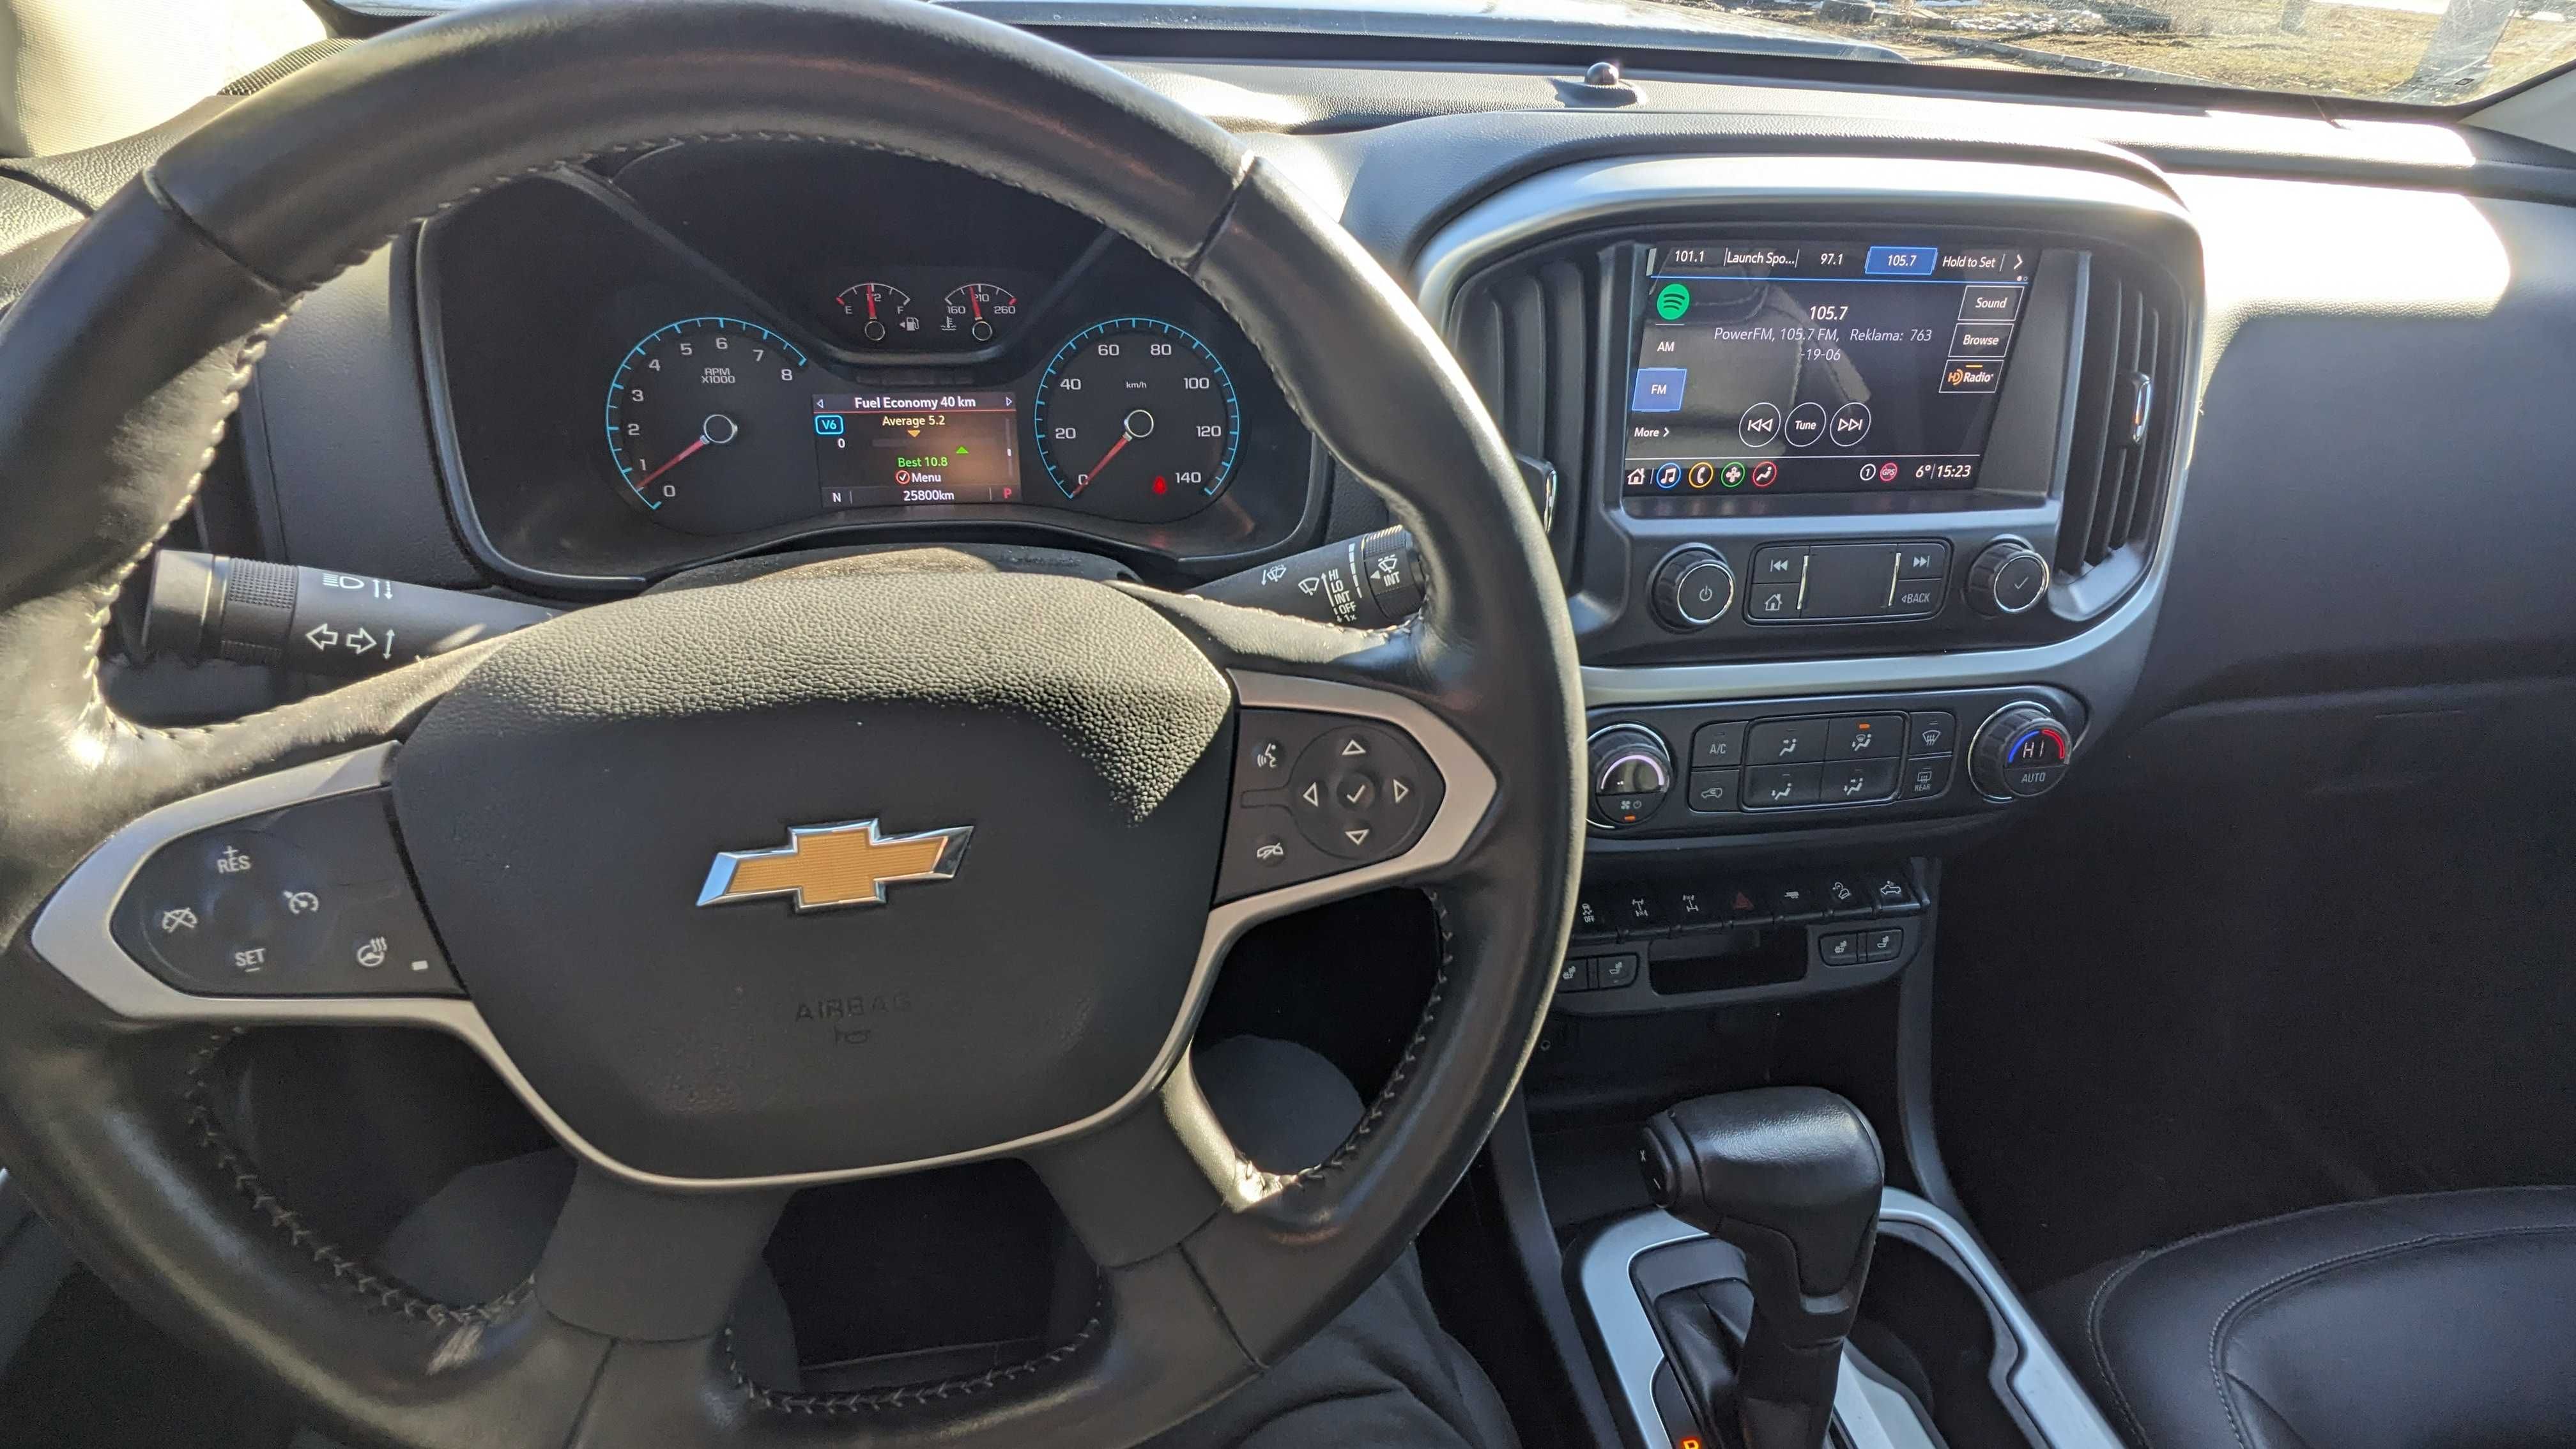 2020 Chevrolet Colorado ZR2 V6 3.6 313HP 26тыс КМ Блокировки Перед Зад